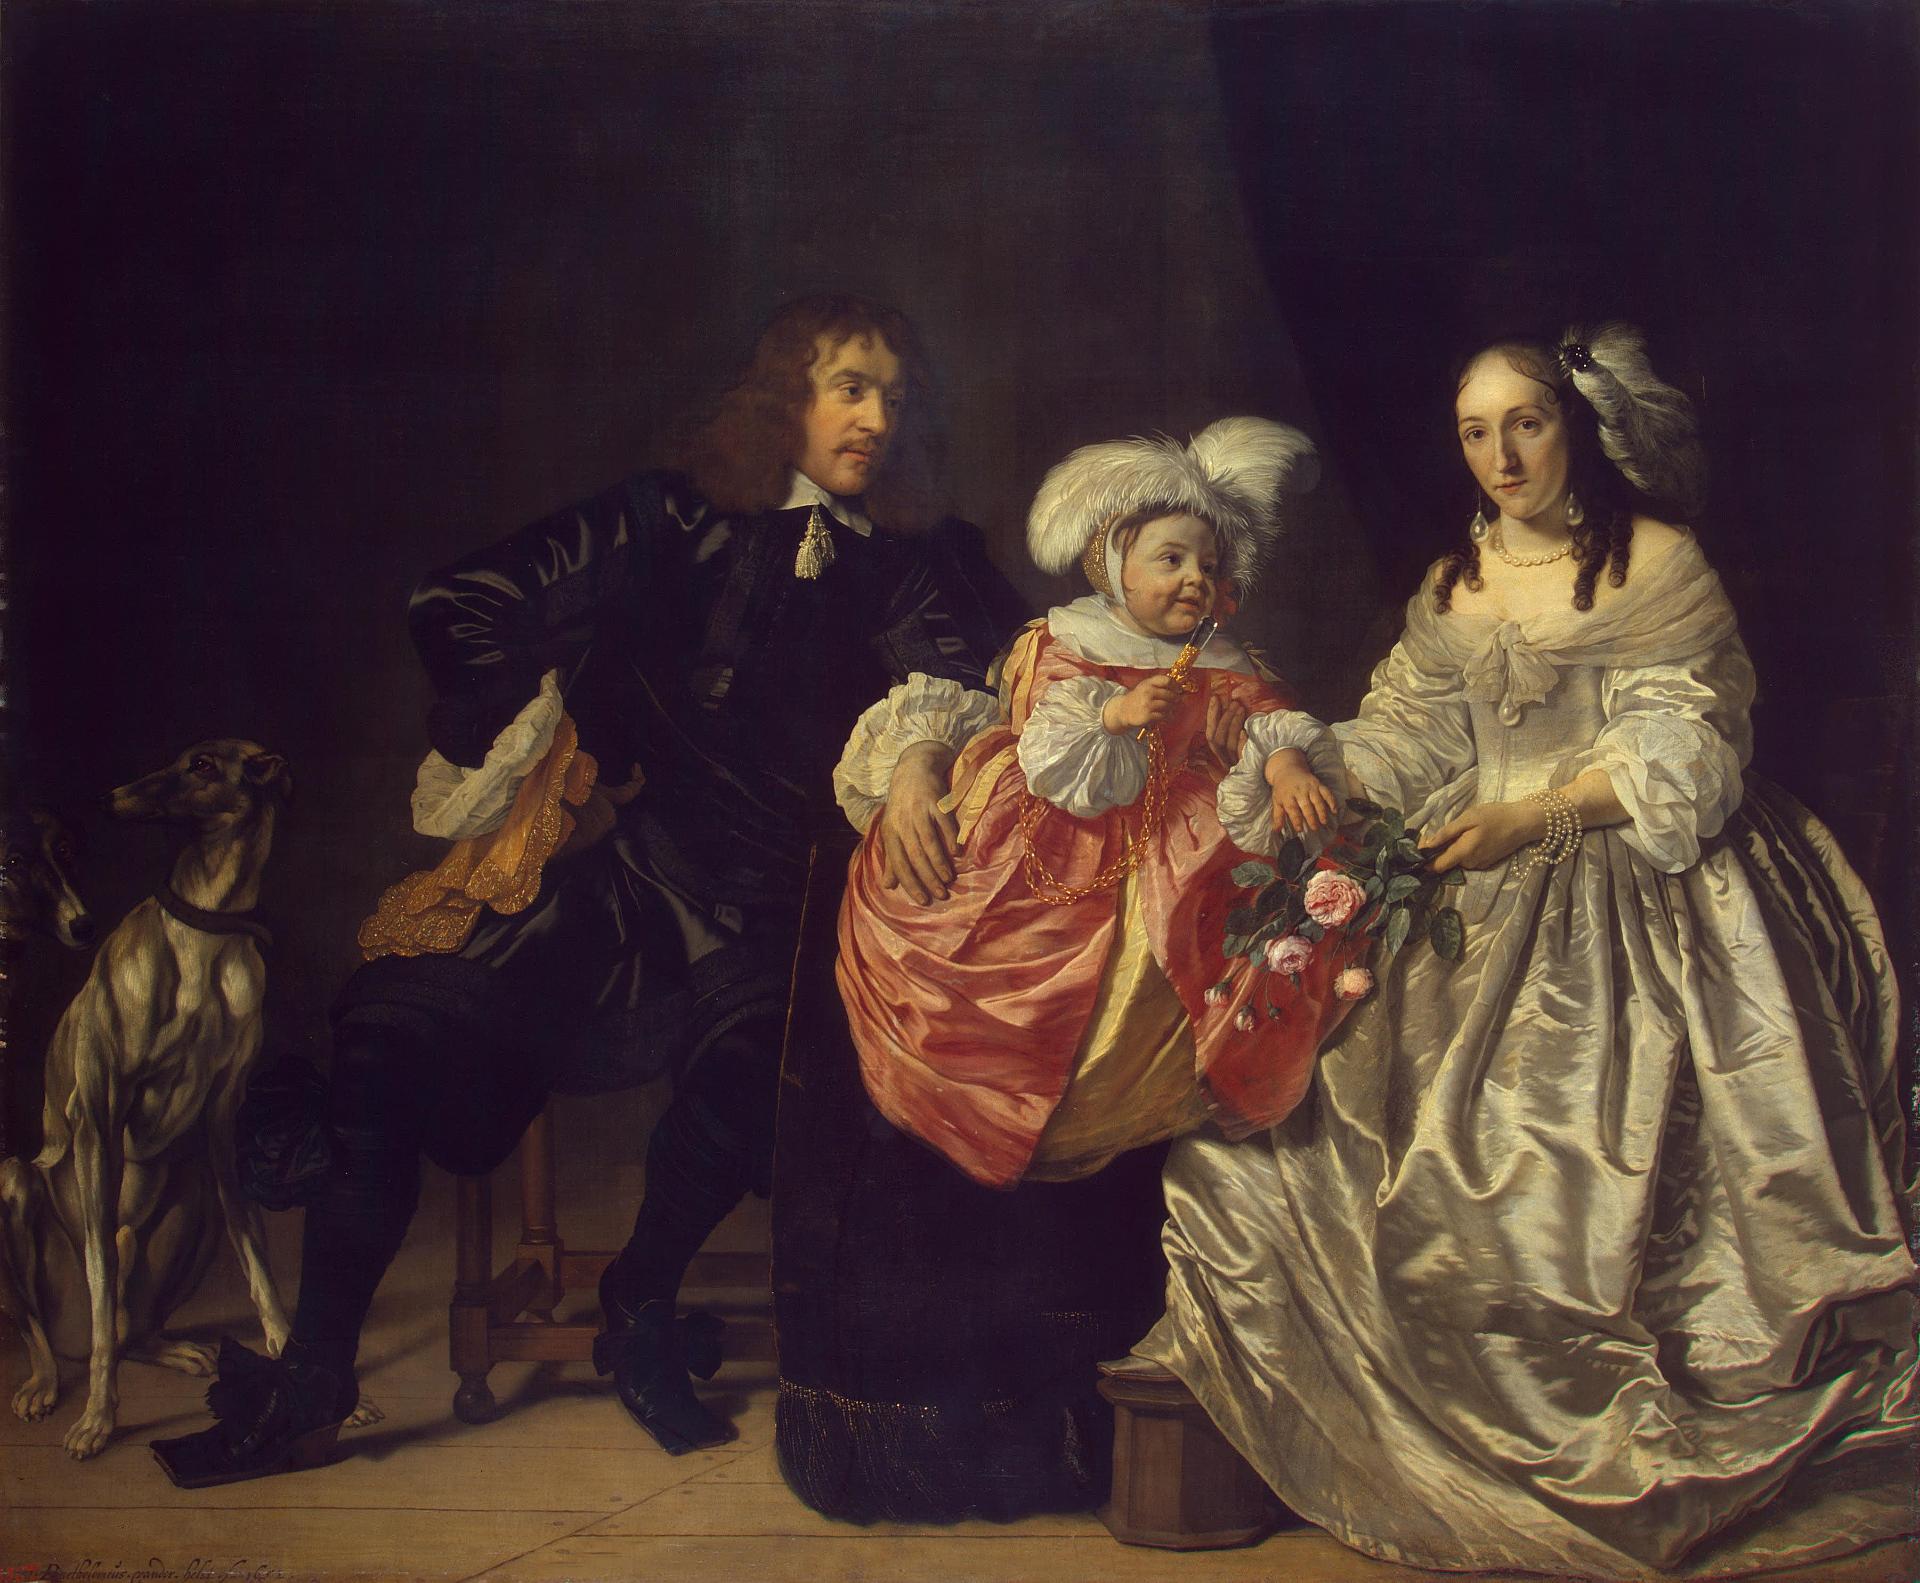 Бартоломеус ван дер Хелст. "Семейный портрет". 1642.